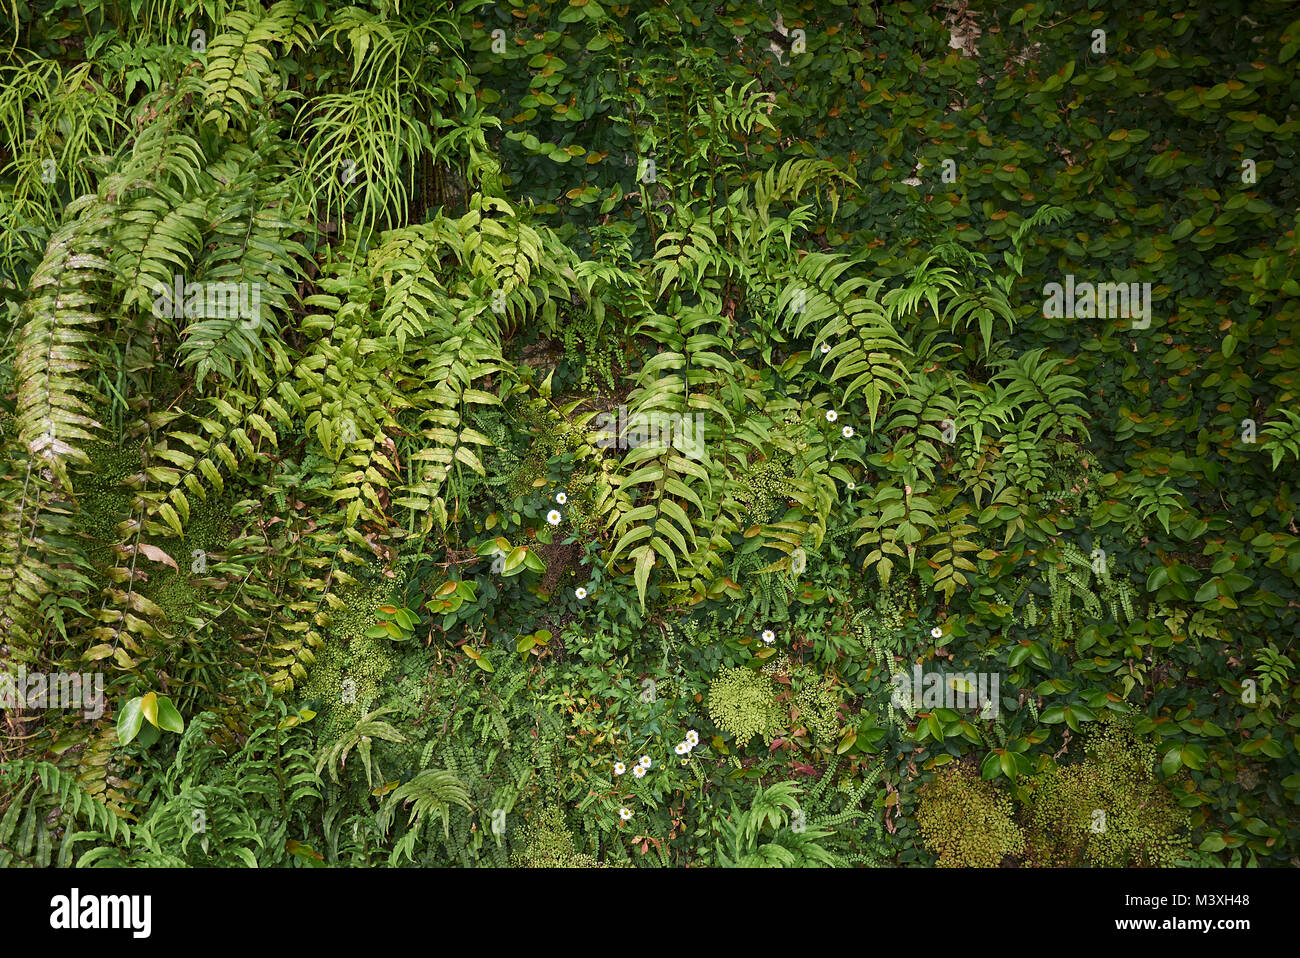 ferns on a rocky slopes Stock Photo